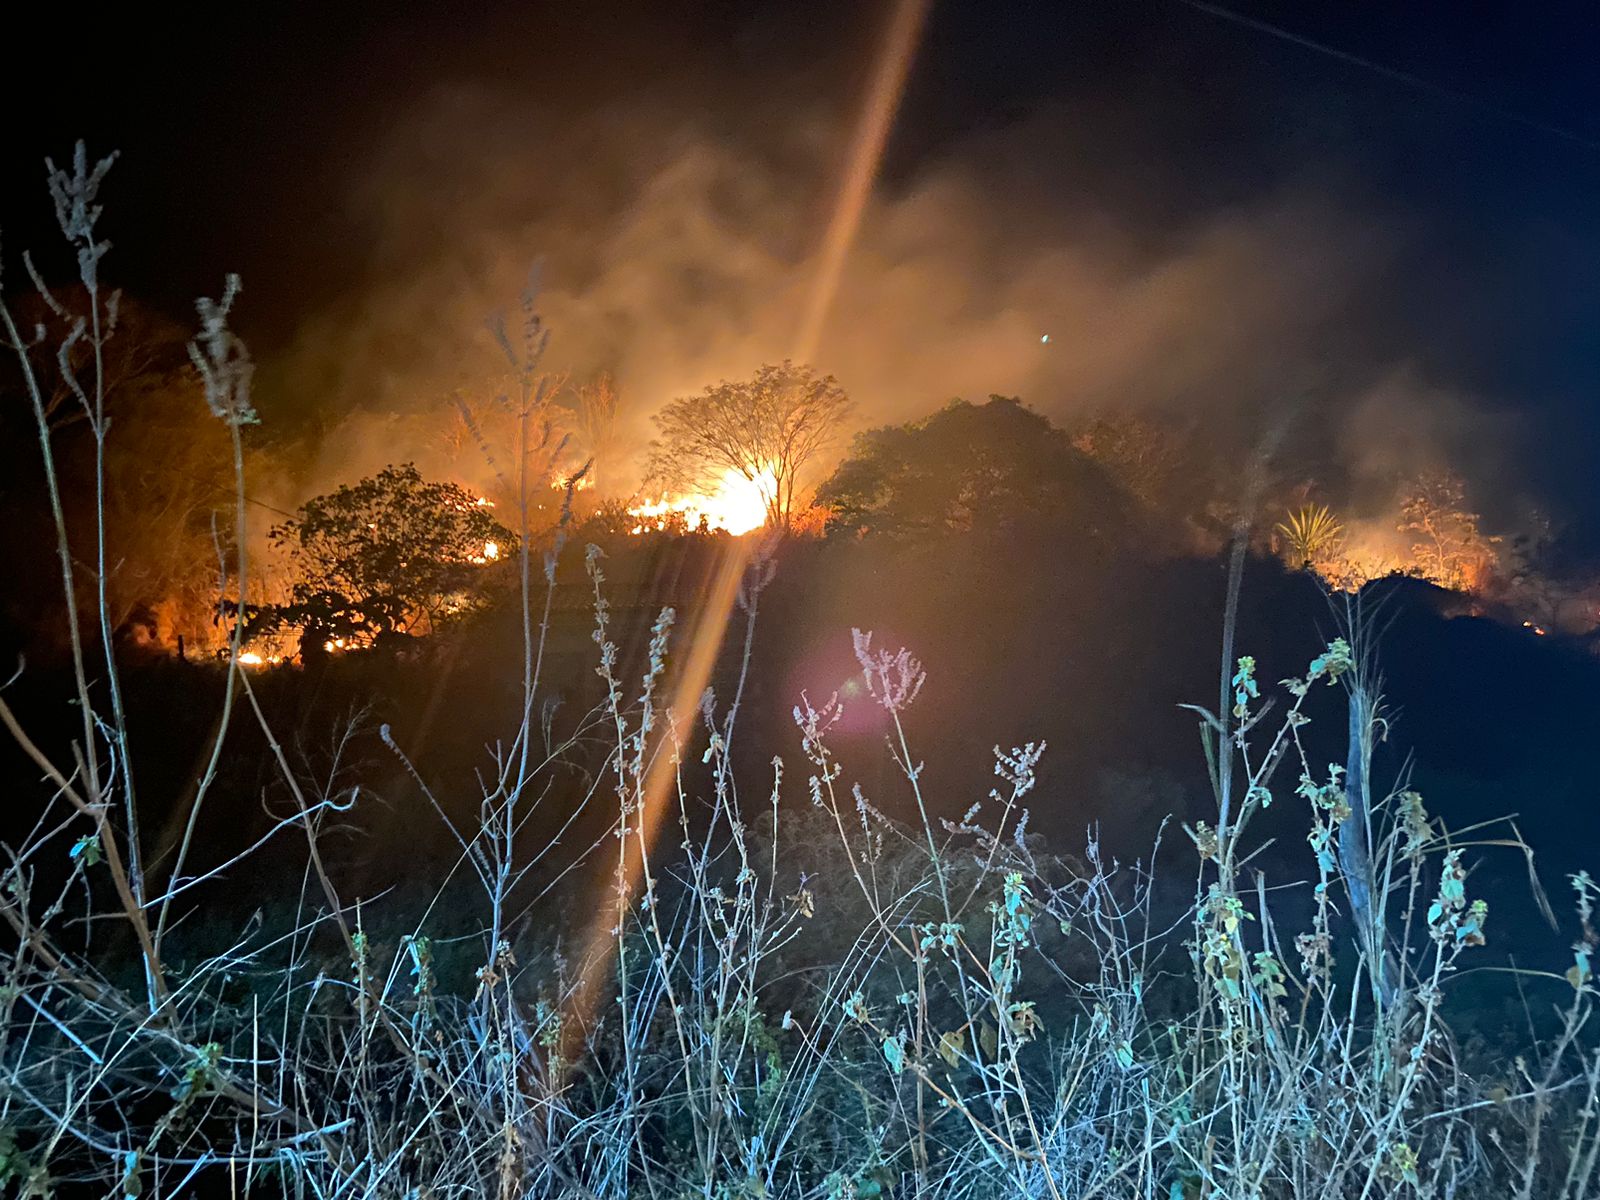 Defesa Civil de Caruaru alerta sobre perigo de queimadas e incêndios em mata neste período de estiagem